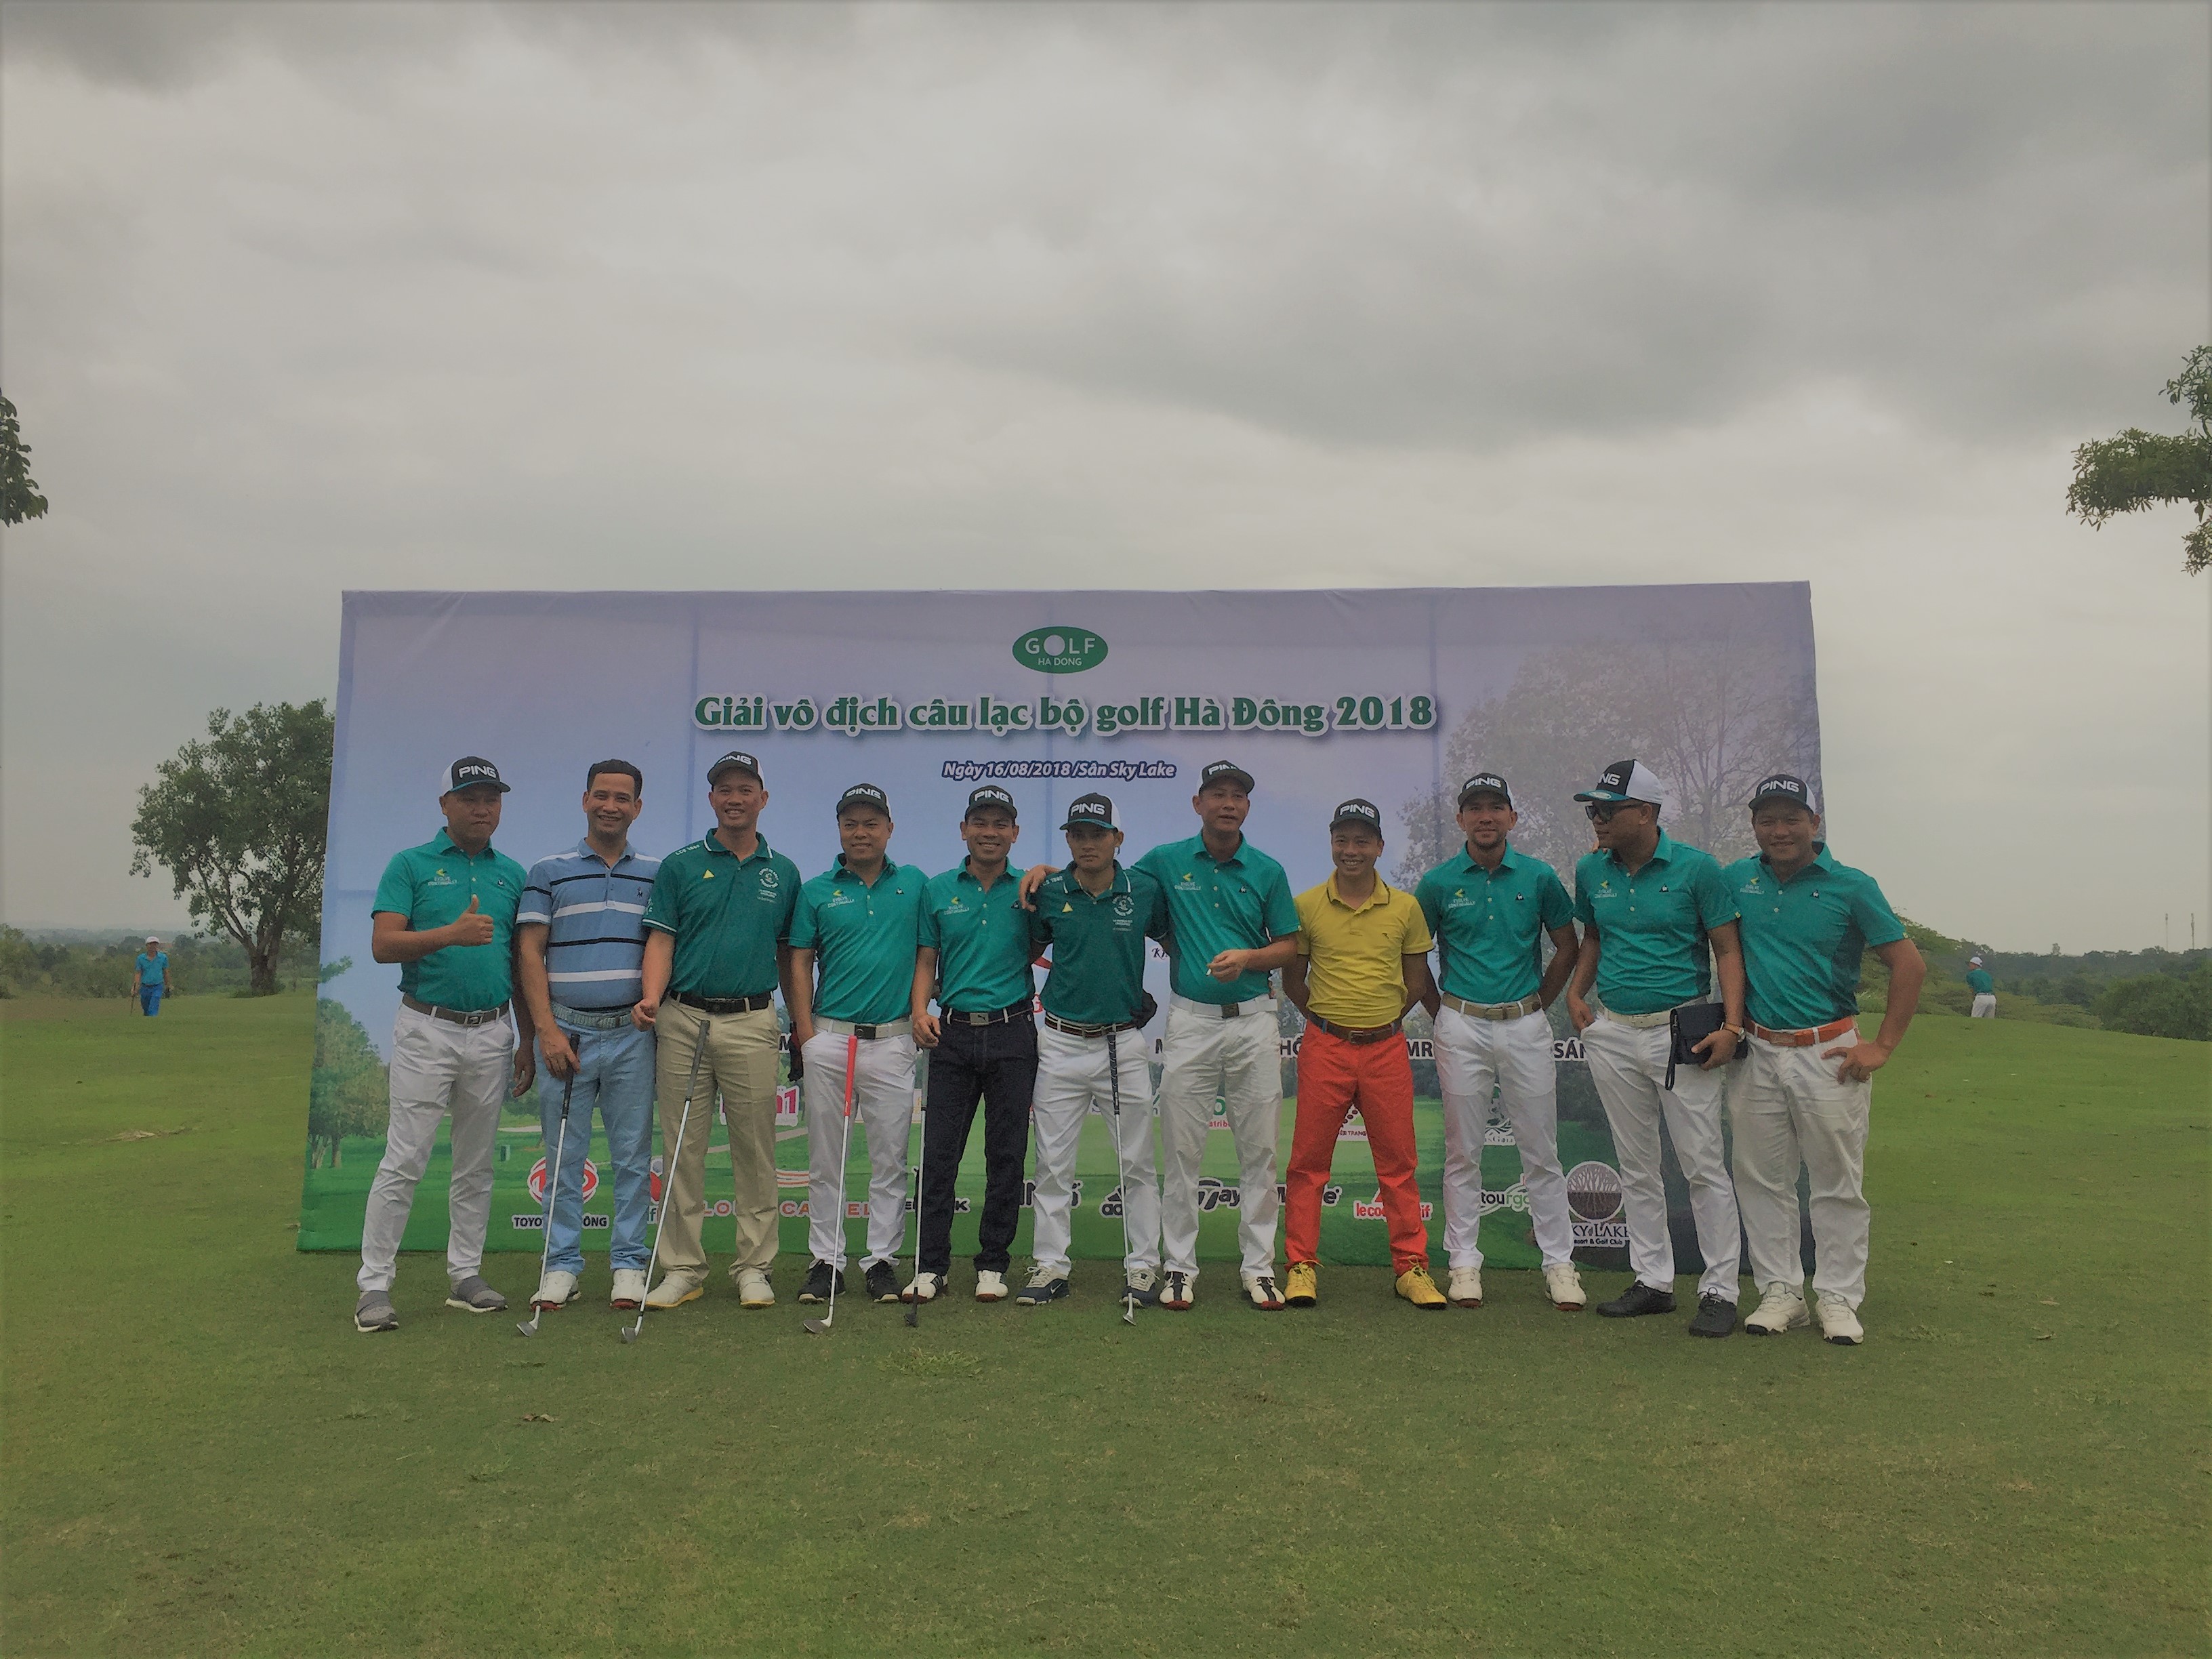 Giải vô địch câu lạc bộ golf Hà Đông 2018